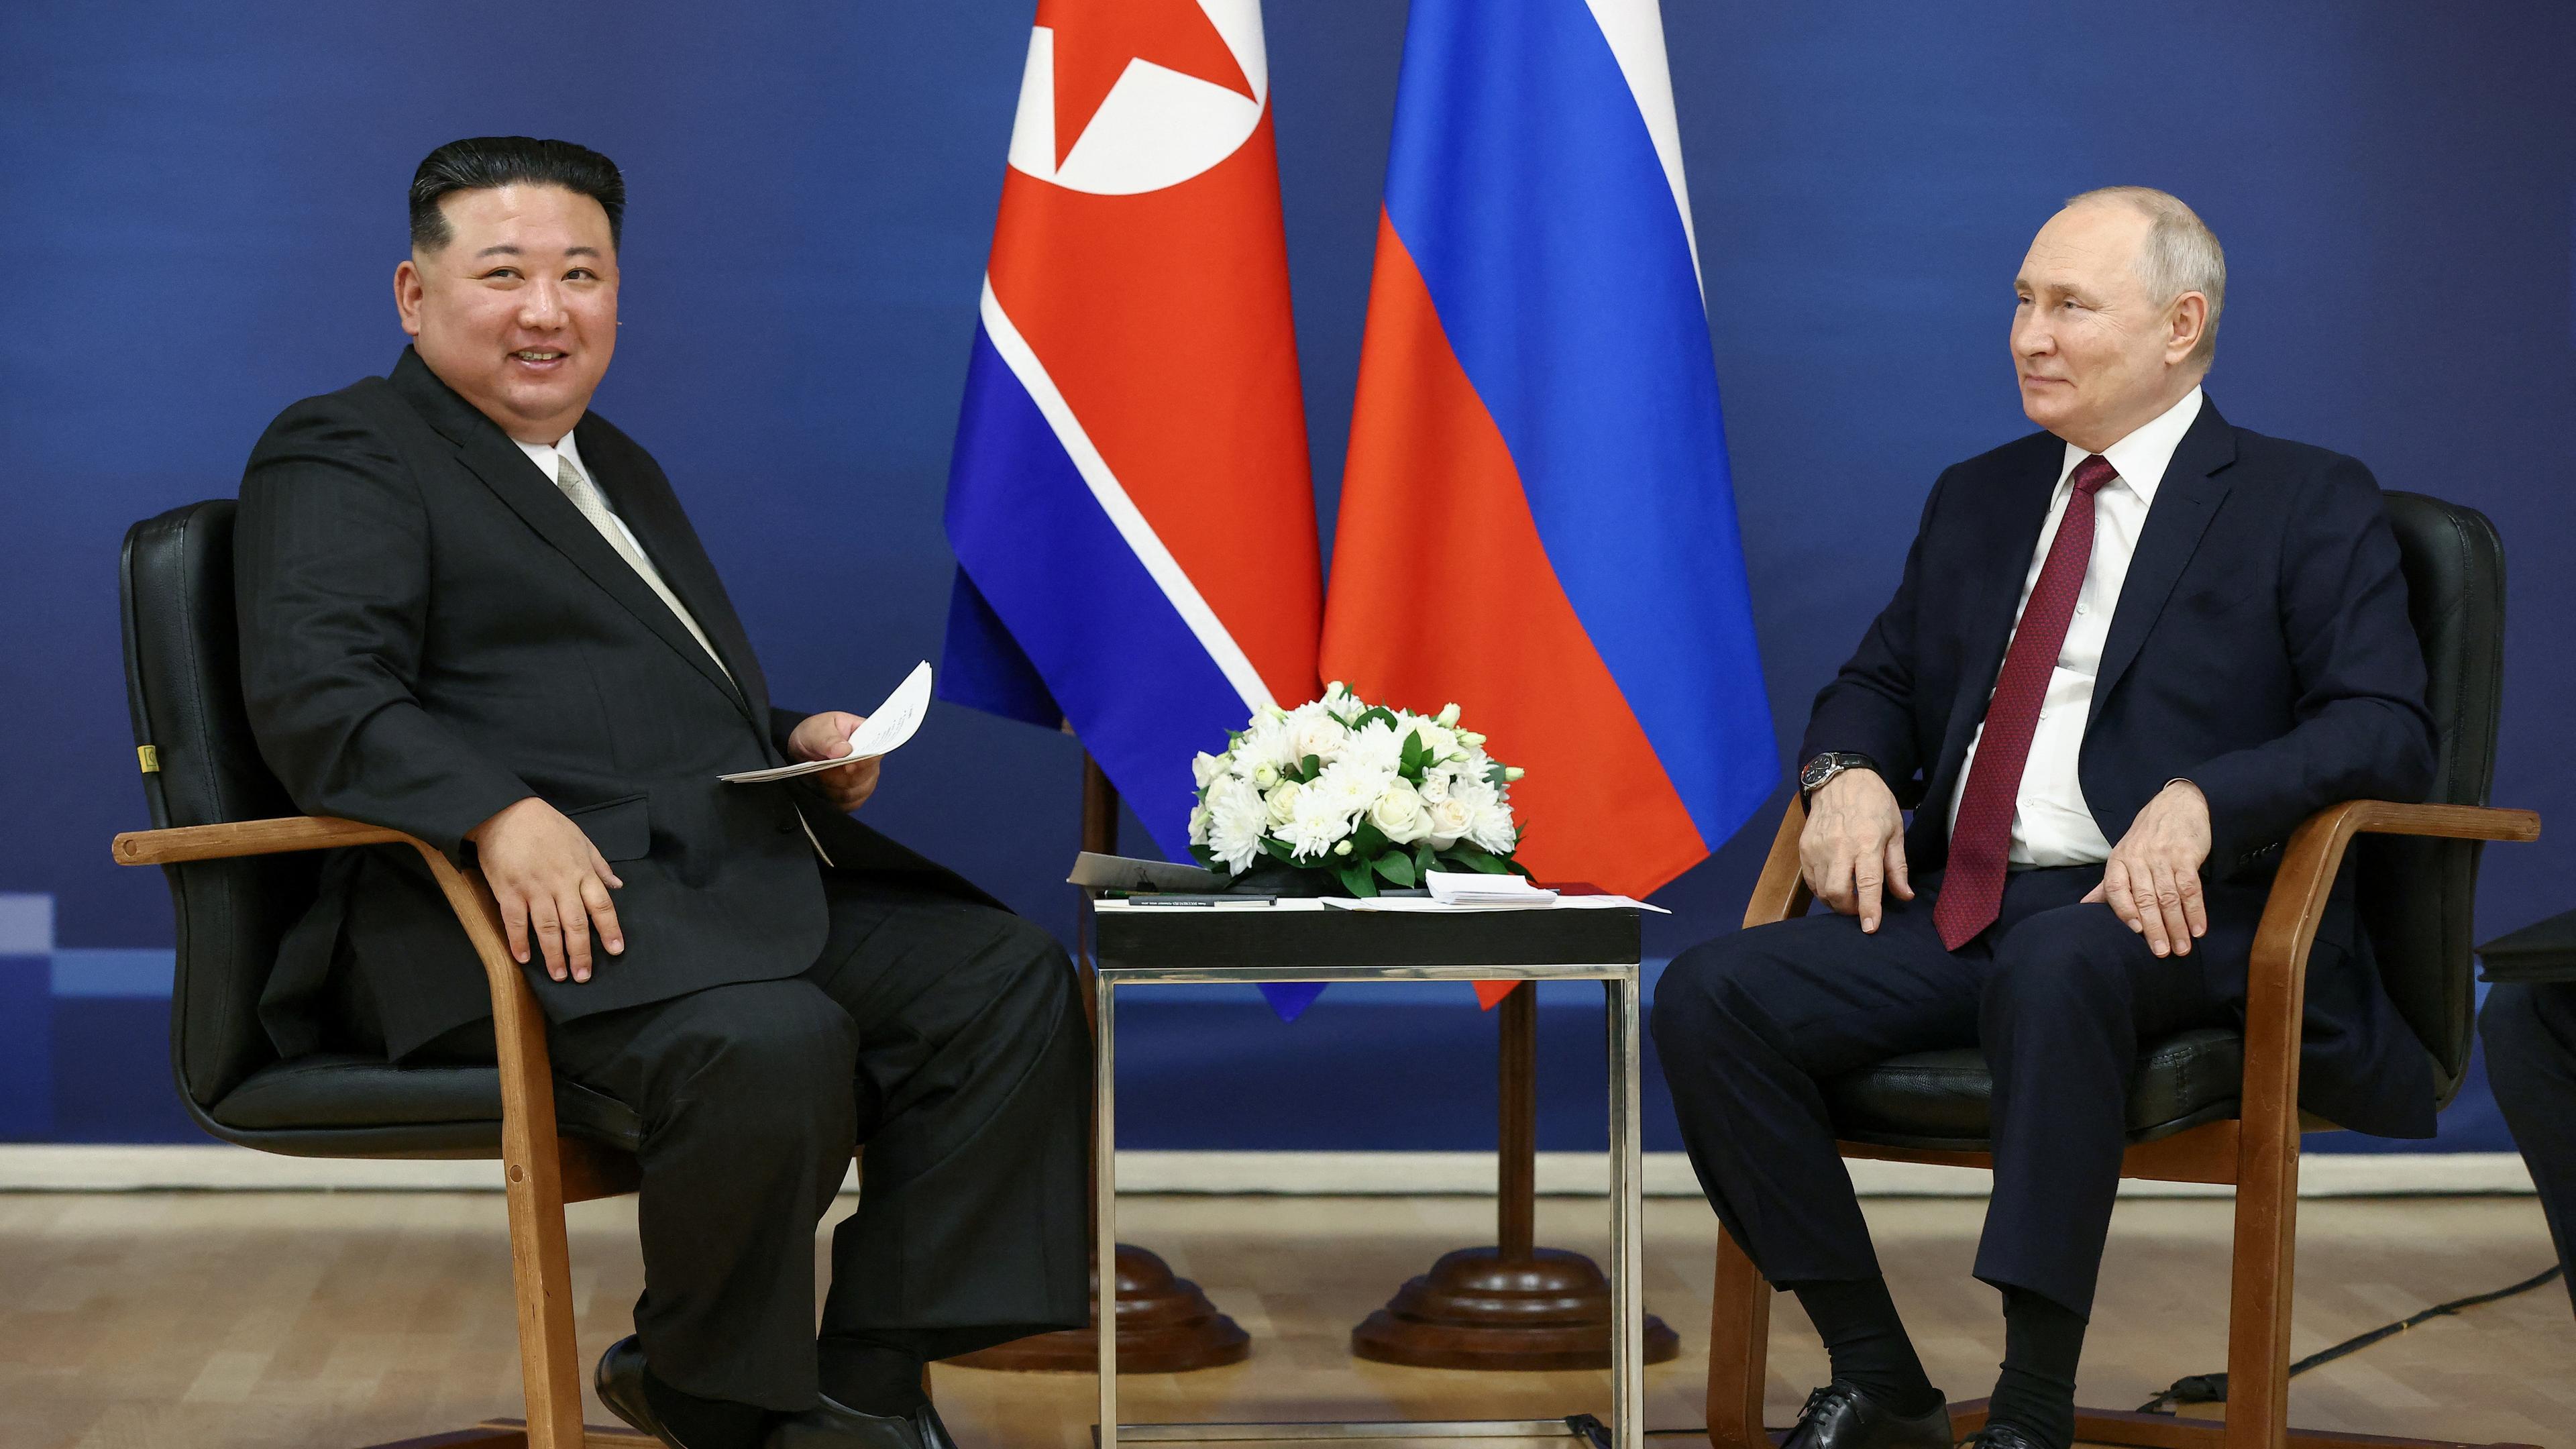 13.09.23, Russland: Der Nordkoreanische Präsident Kim und der russische Präsident Putin sitzen auf  Stühlen mit den jeweiligen Flaggen ihrer Länder im Hintergrund.